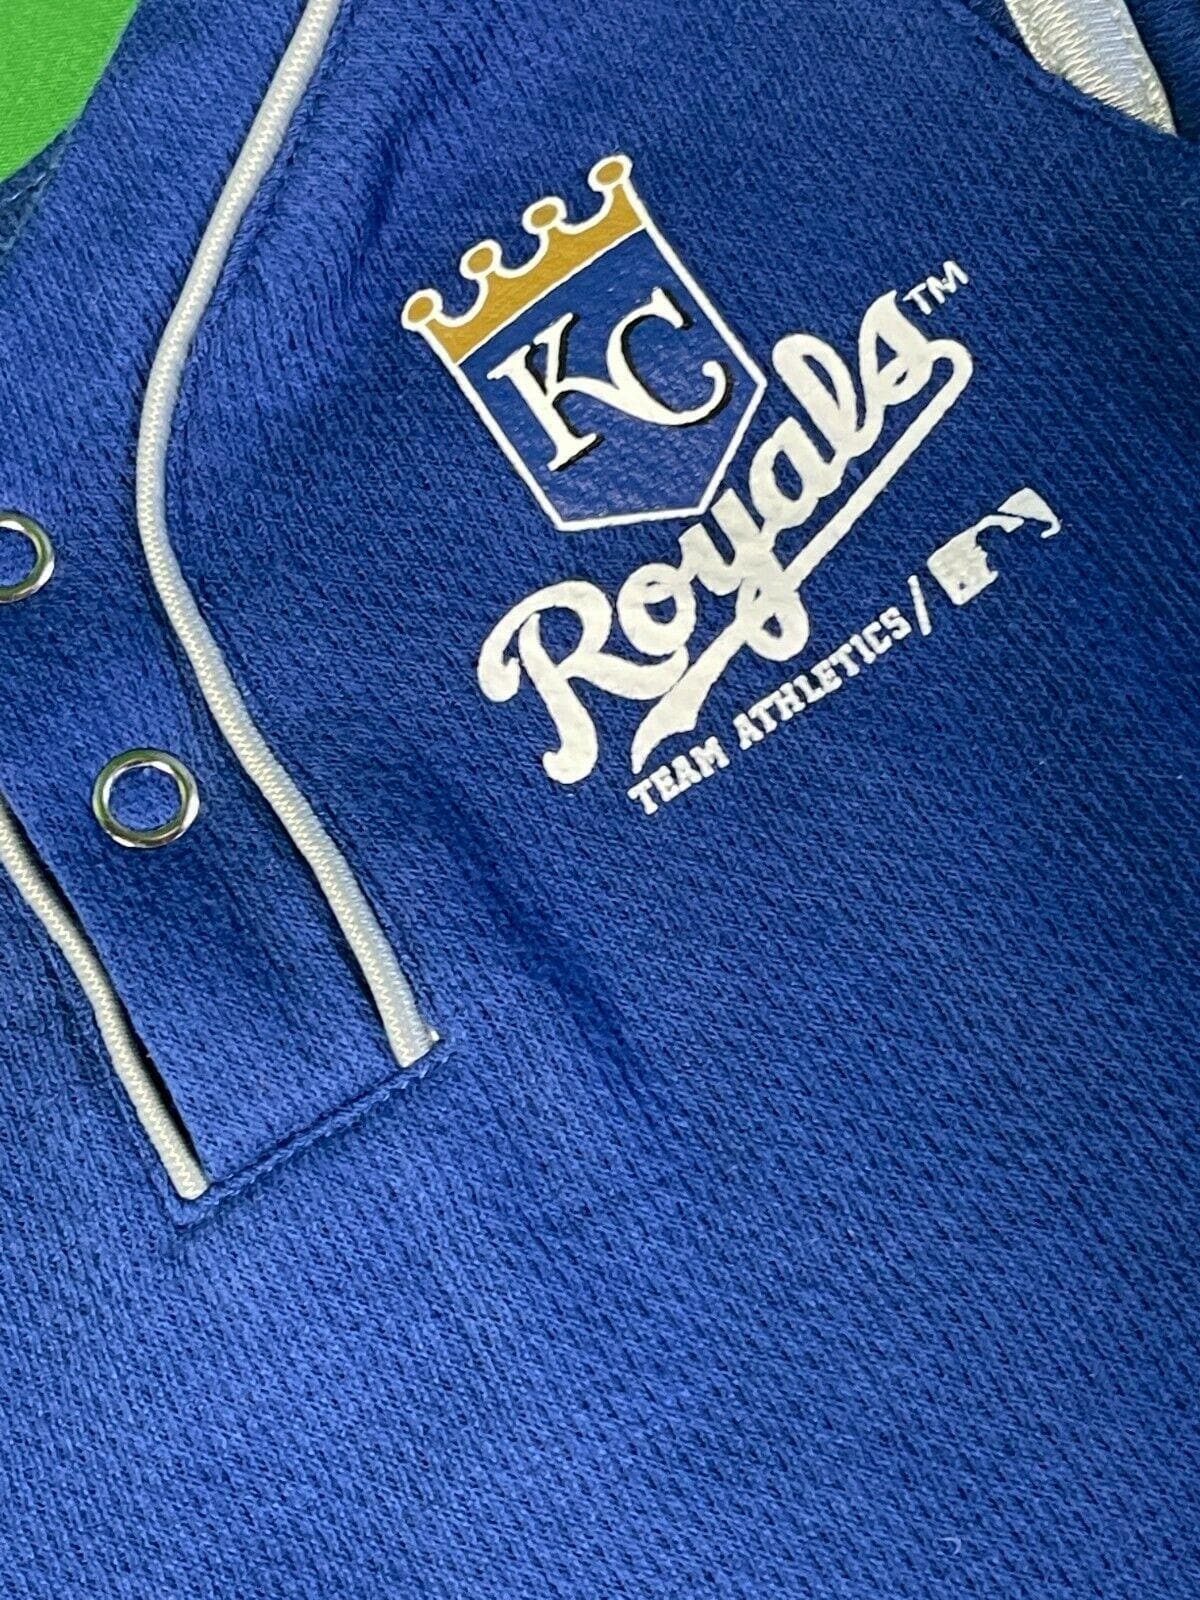 MLB Kansas City Royals Textured Bodysuit/Vest Newborn 0-3 months